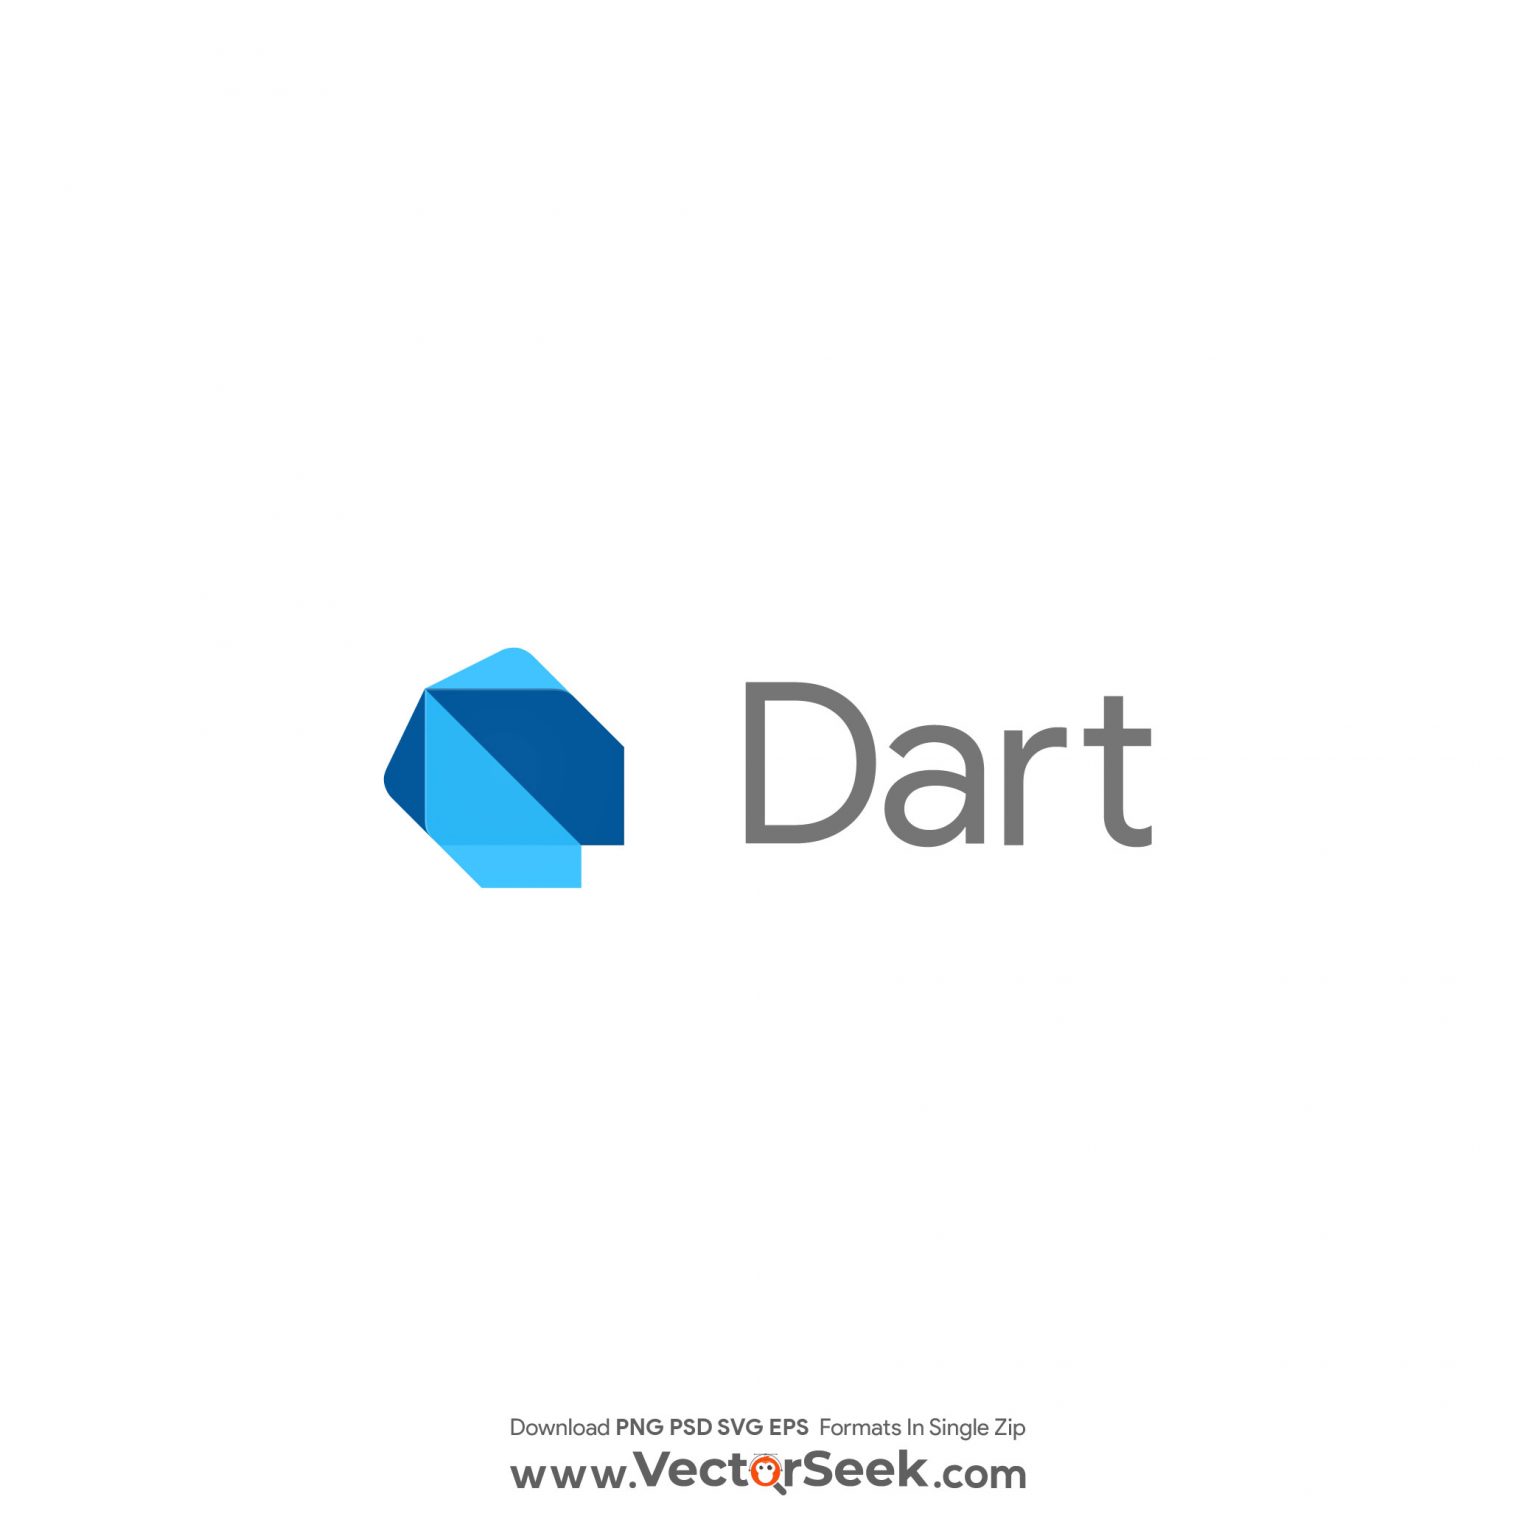 Dart packages. Логотип Dart программирование. Dart язык программирования. Dart Programming language.